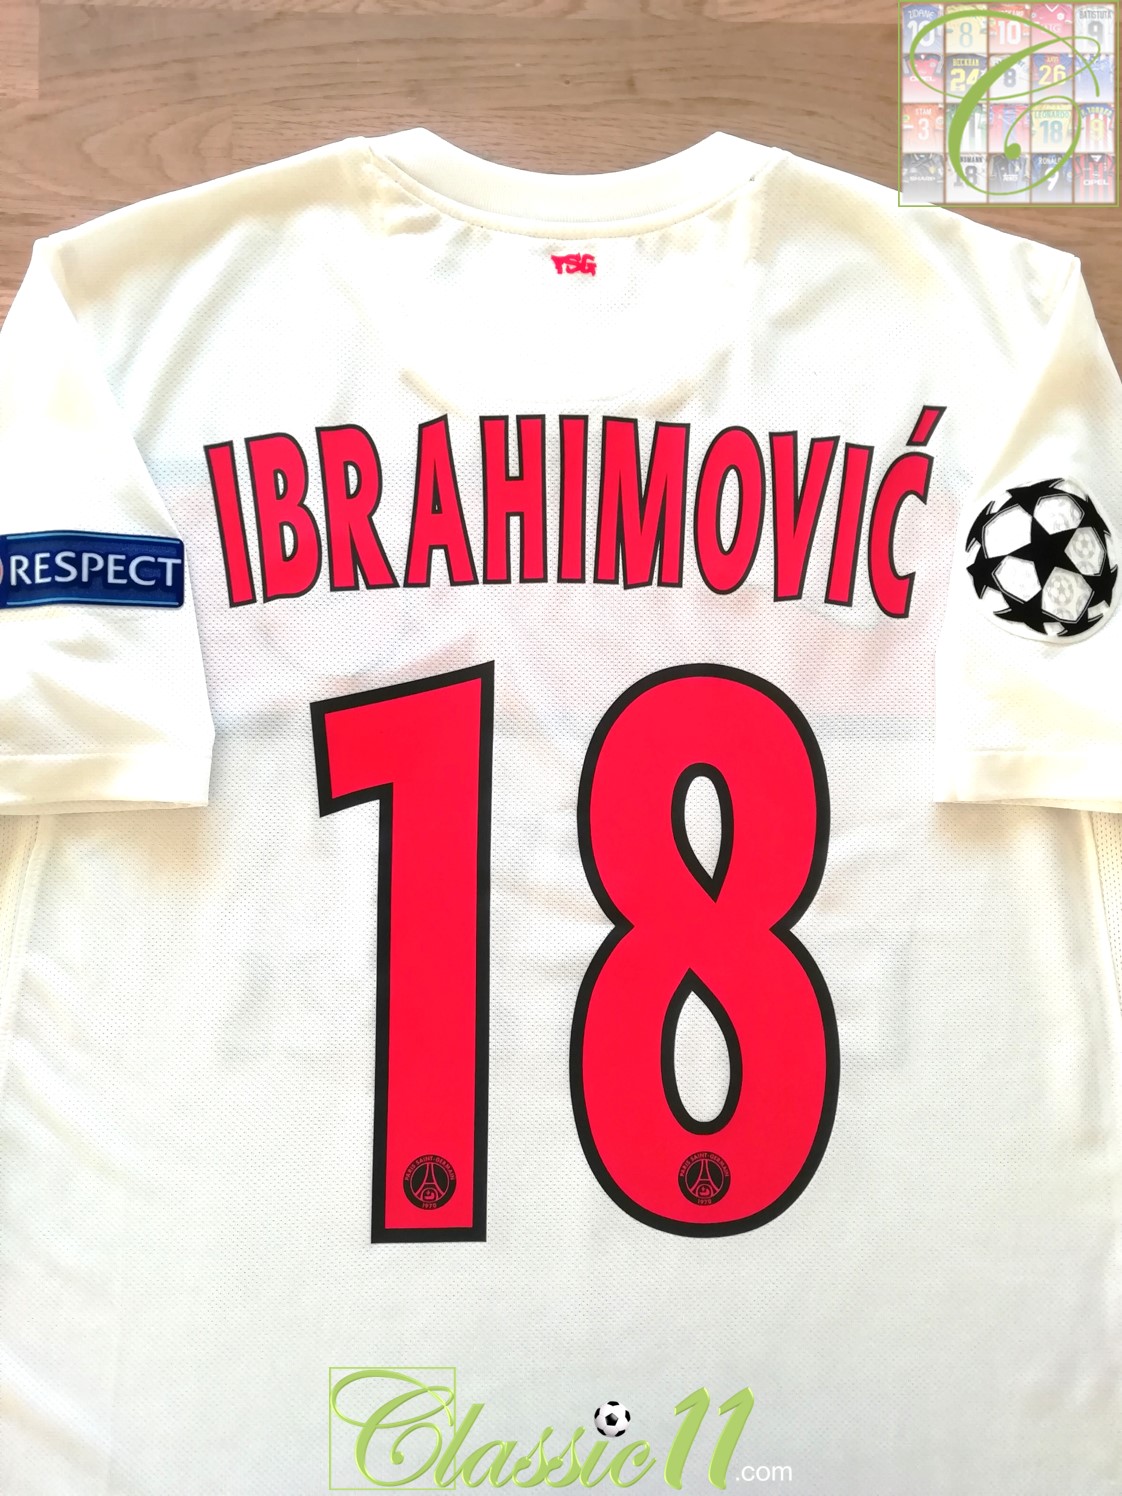 meubilair Nadruk Slim C11 Football Shirts on Twitter: "Just arrived in store: Ibrahimovic #18 #PSG  2012/13 3rd #UCL Shirt - £99.95 (M) https://t.co/RMUowO1r0d  https://t.co/w55Fi1j2ds" / Twitter